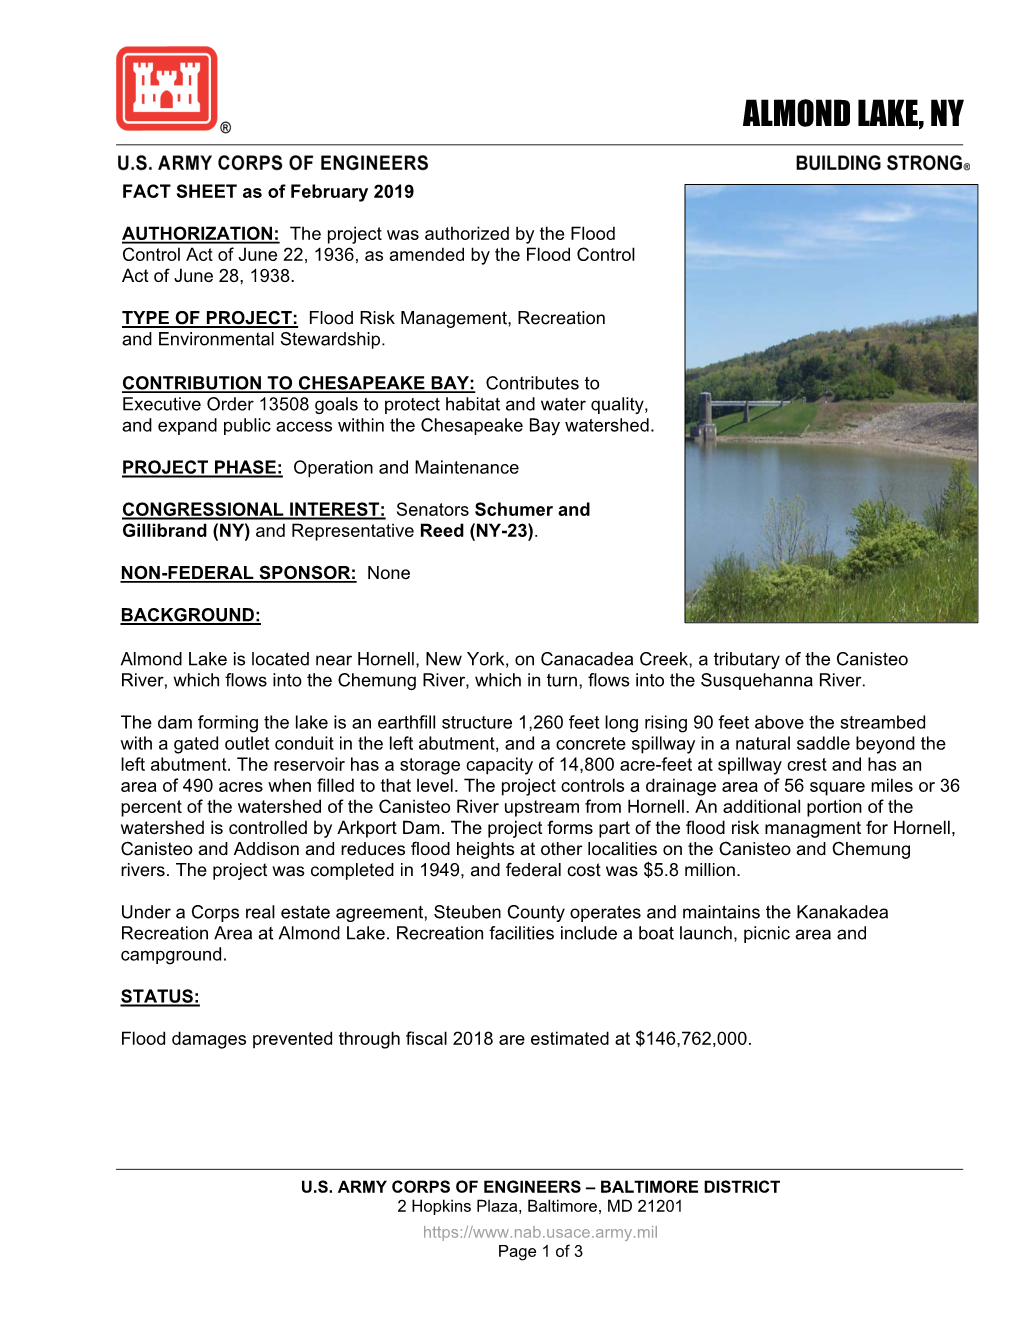 Almond Lake New York Fact Sheet